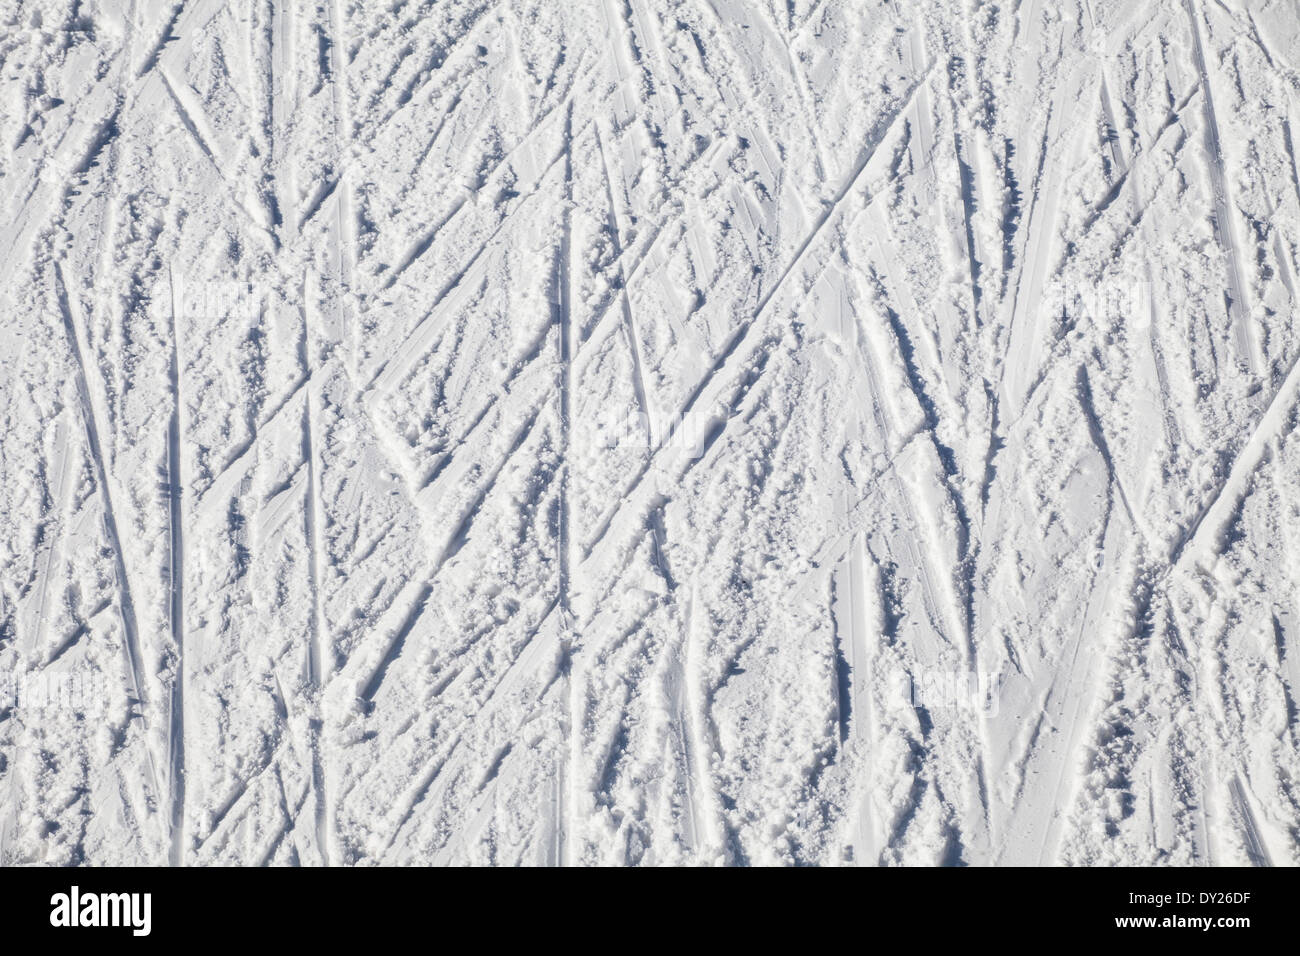 Résumé Vue aérienne de pistes de ski Banque D'Images